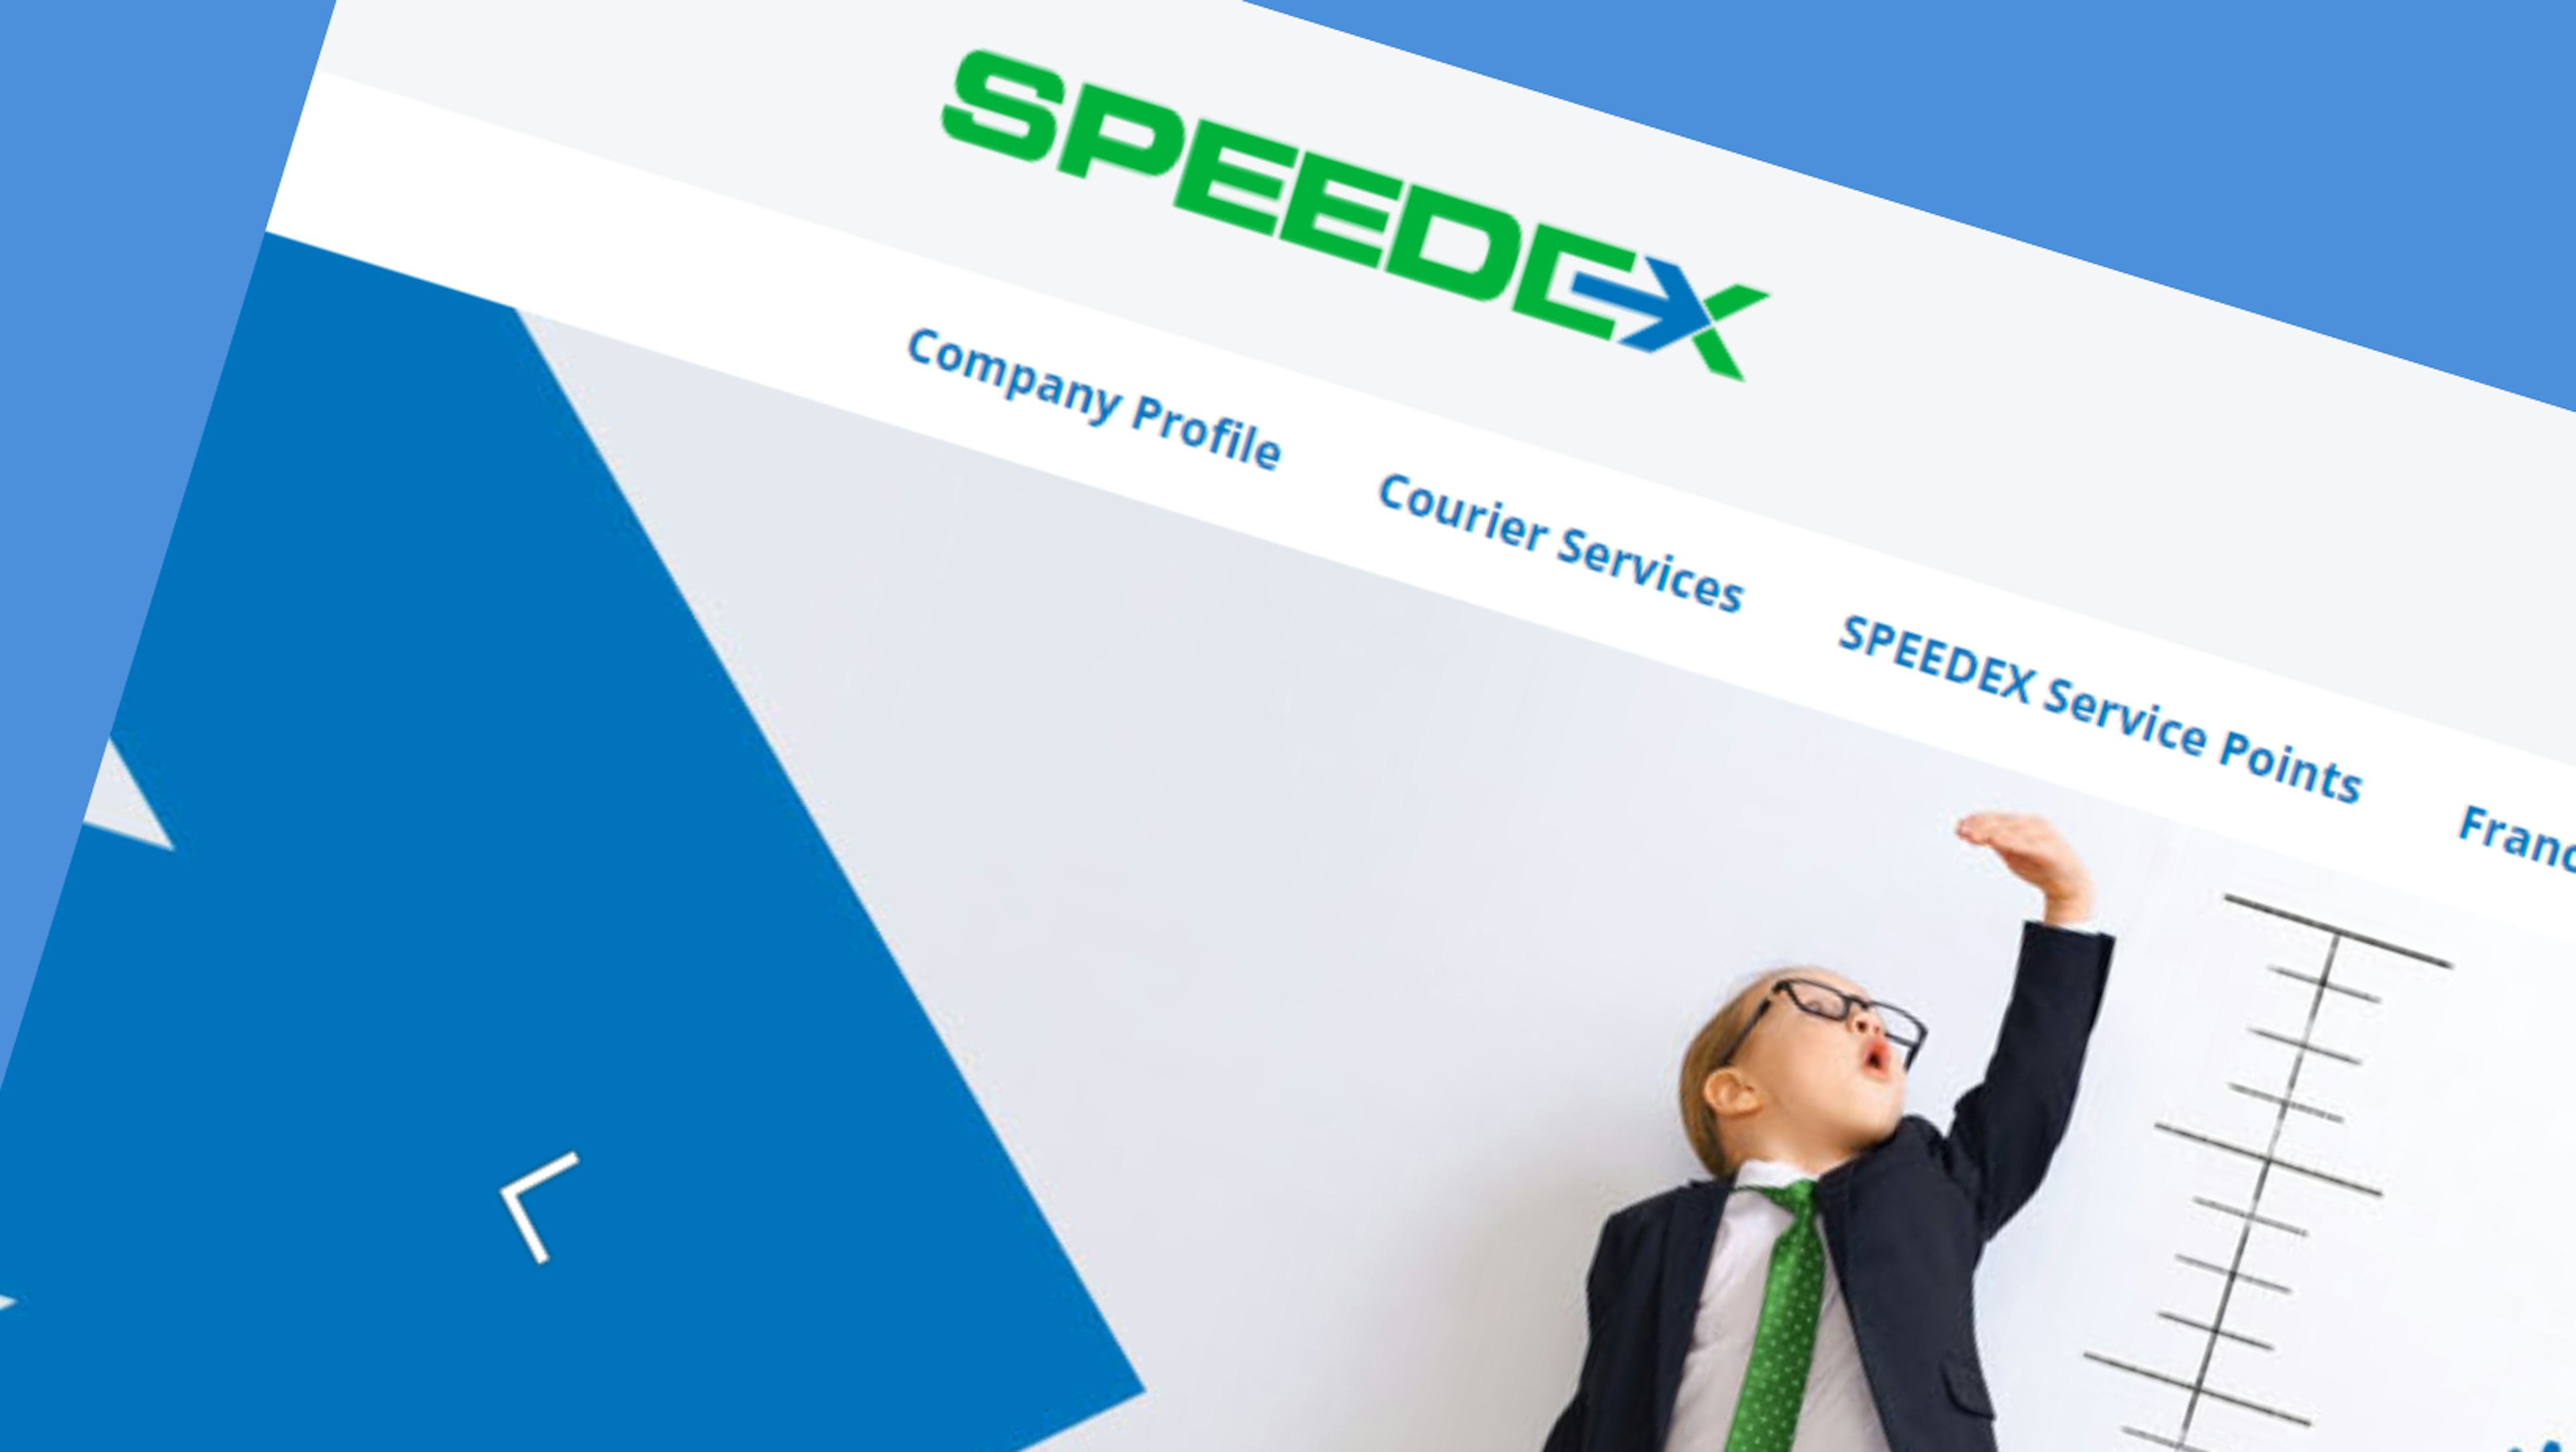 Screen capture of the SPEEDEX website.